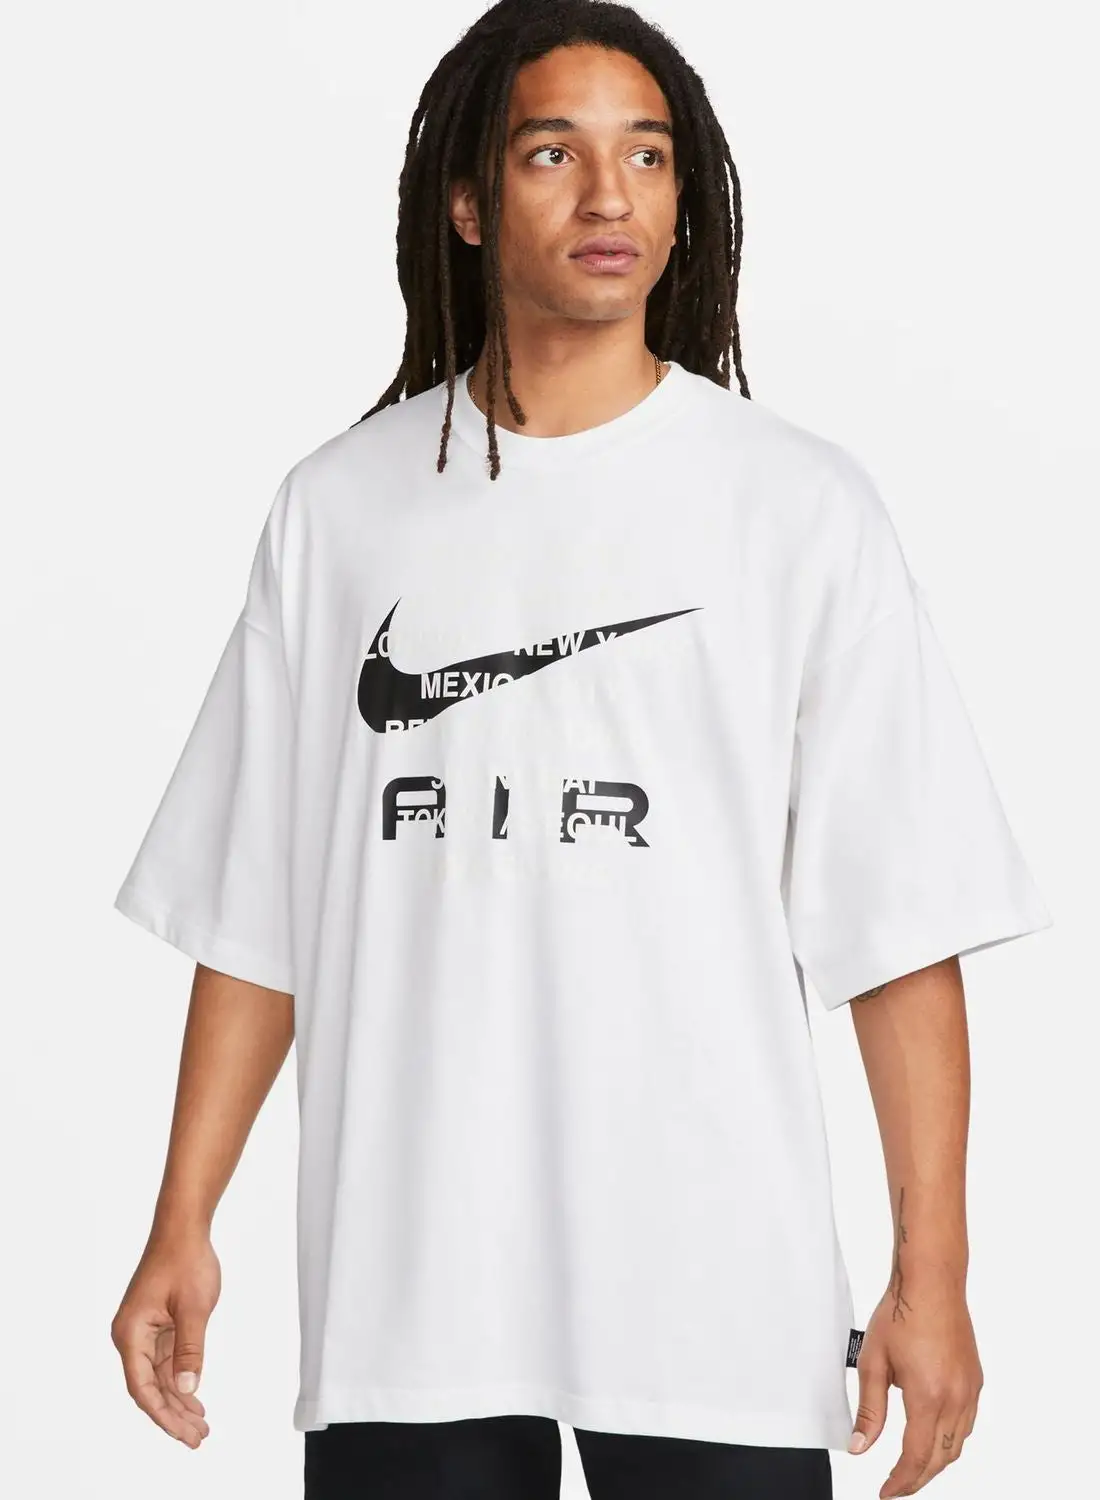 Nike Essential Air T-Shirt